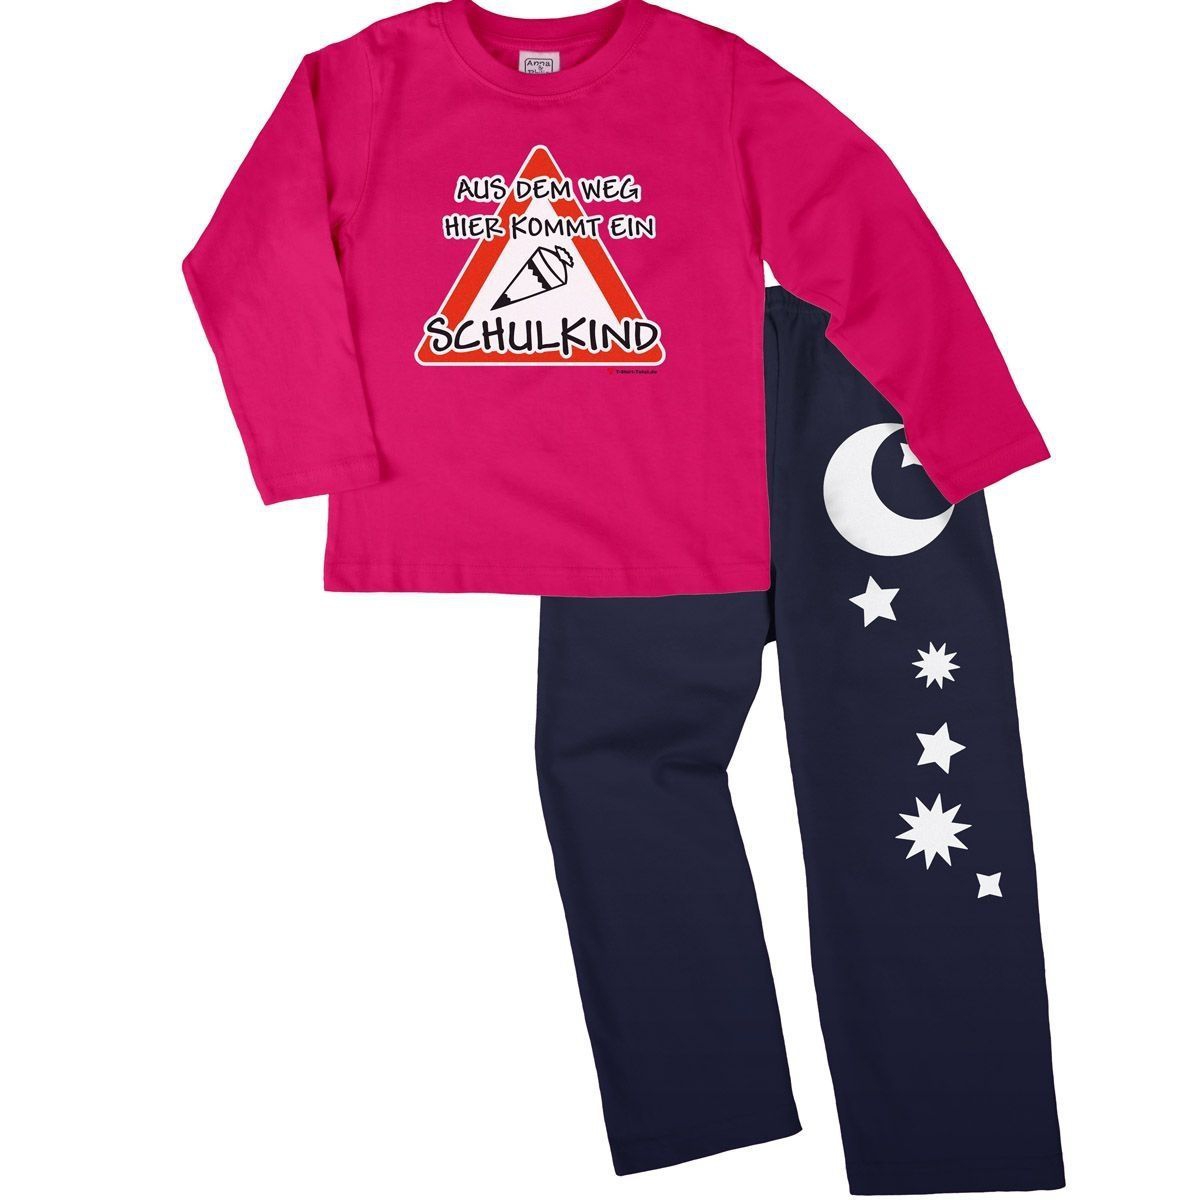 Kommt ein Schulkind Pyjama Set pink / navy 122 / 128